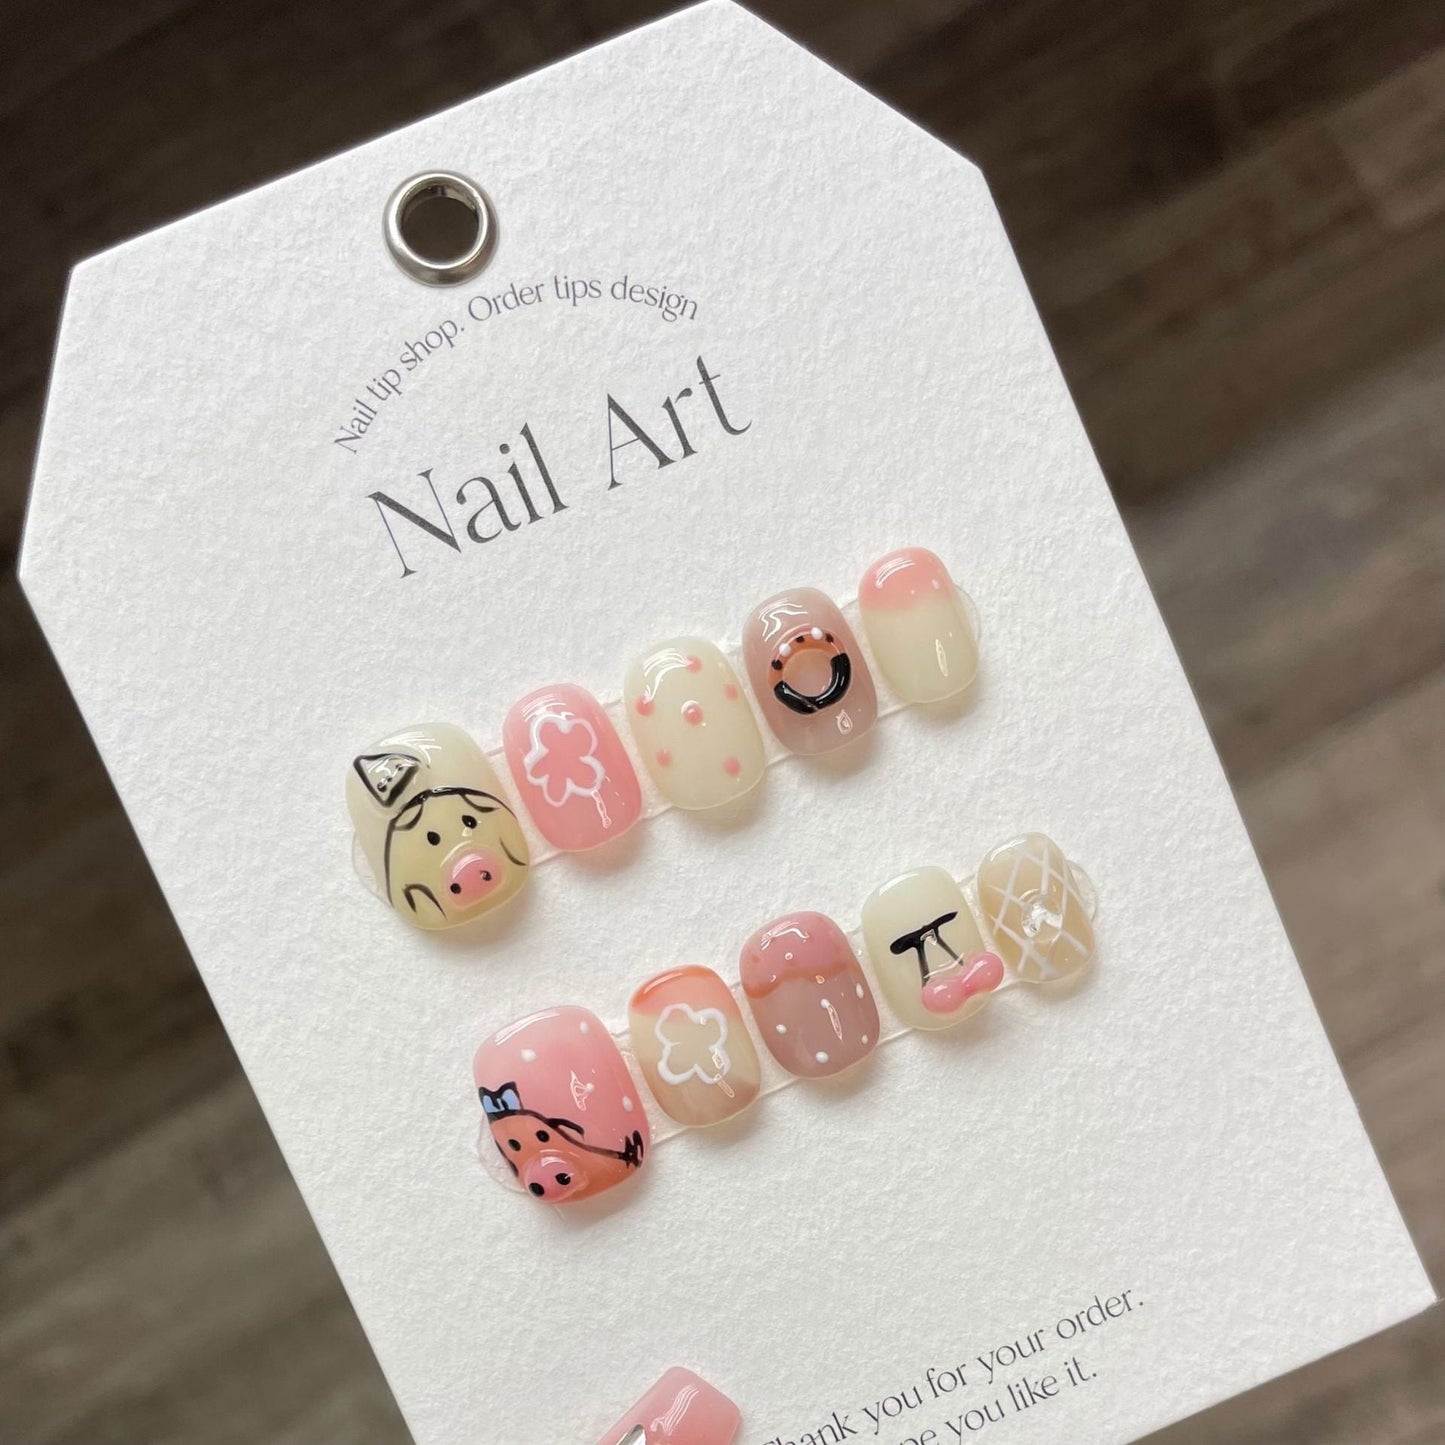 948 Hand drawn pig style press on nails 100% handmade false nails pink